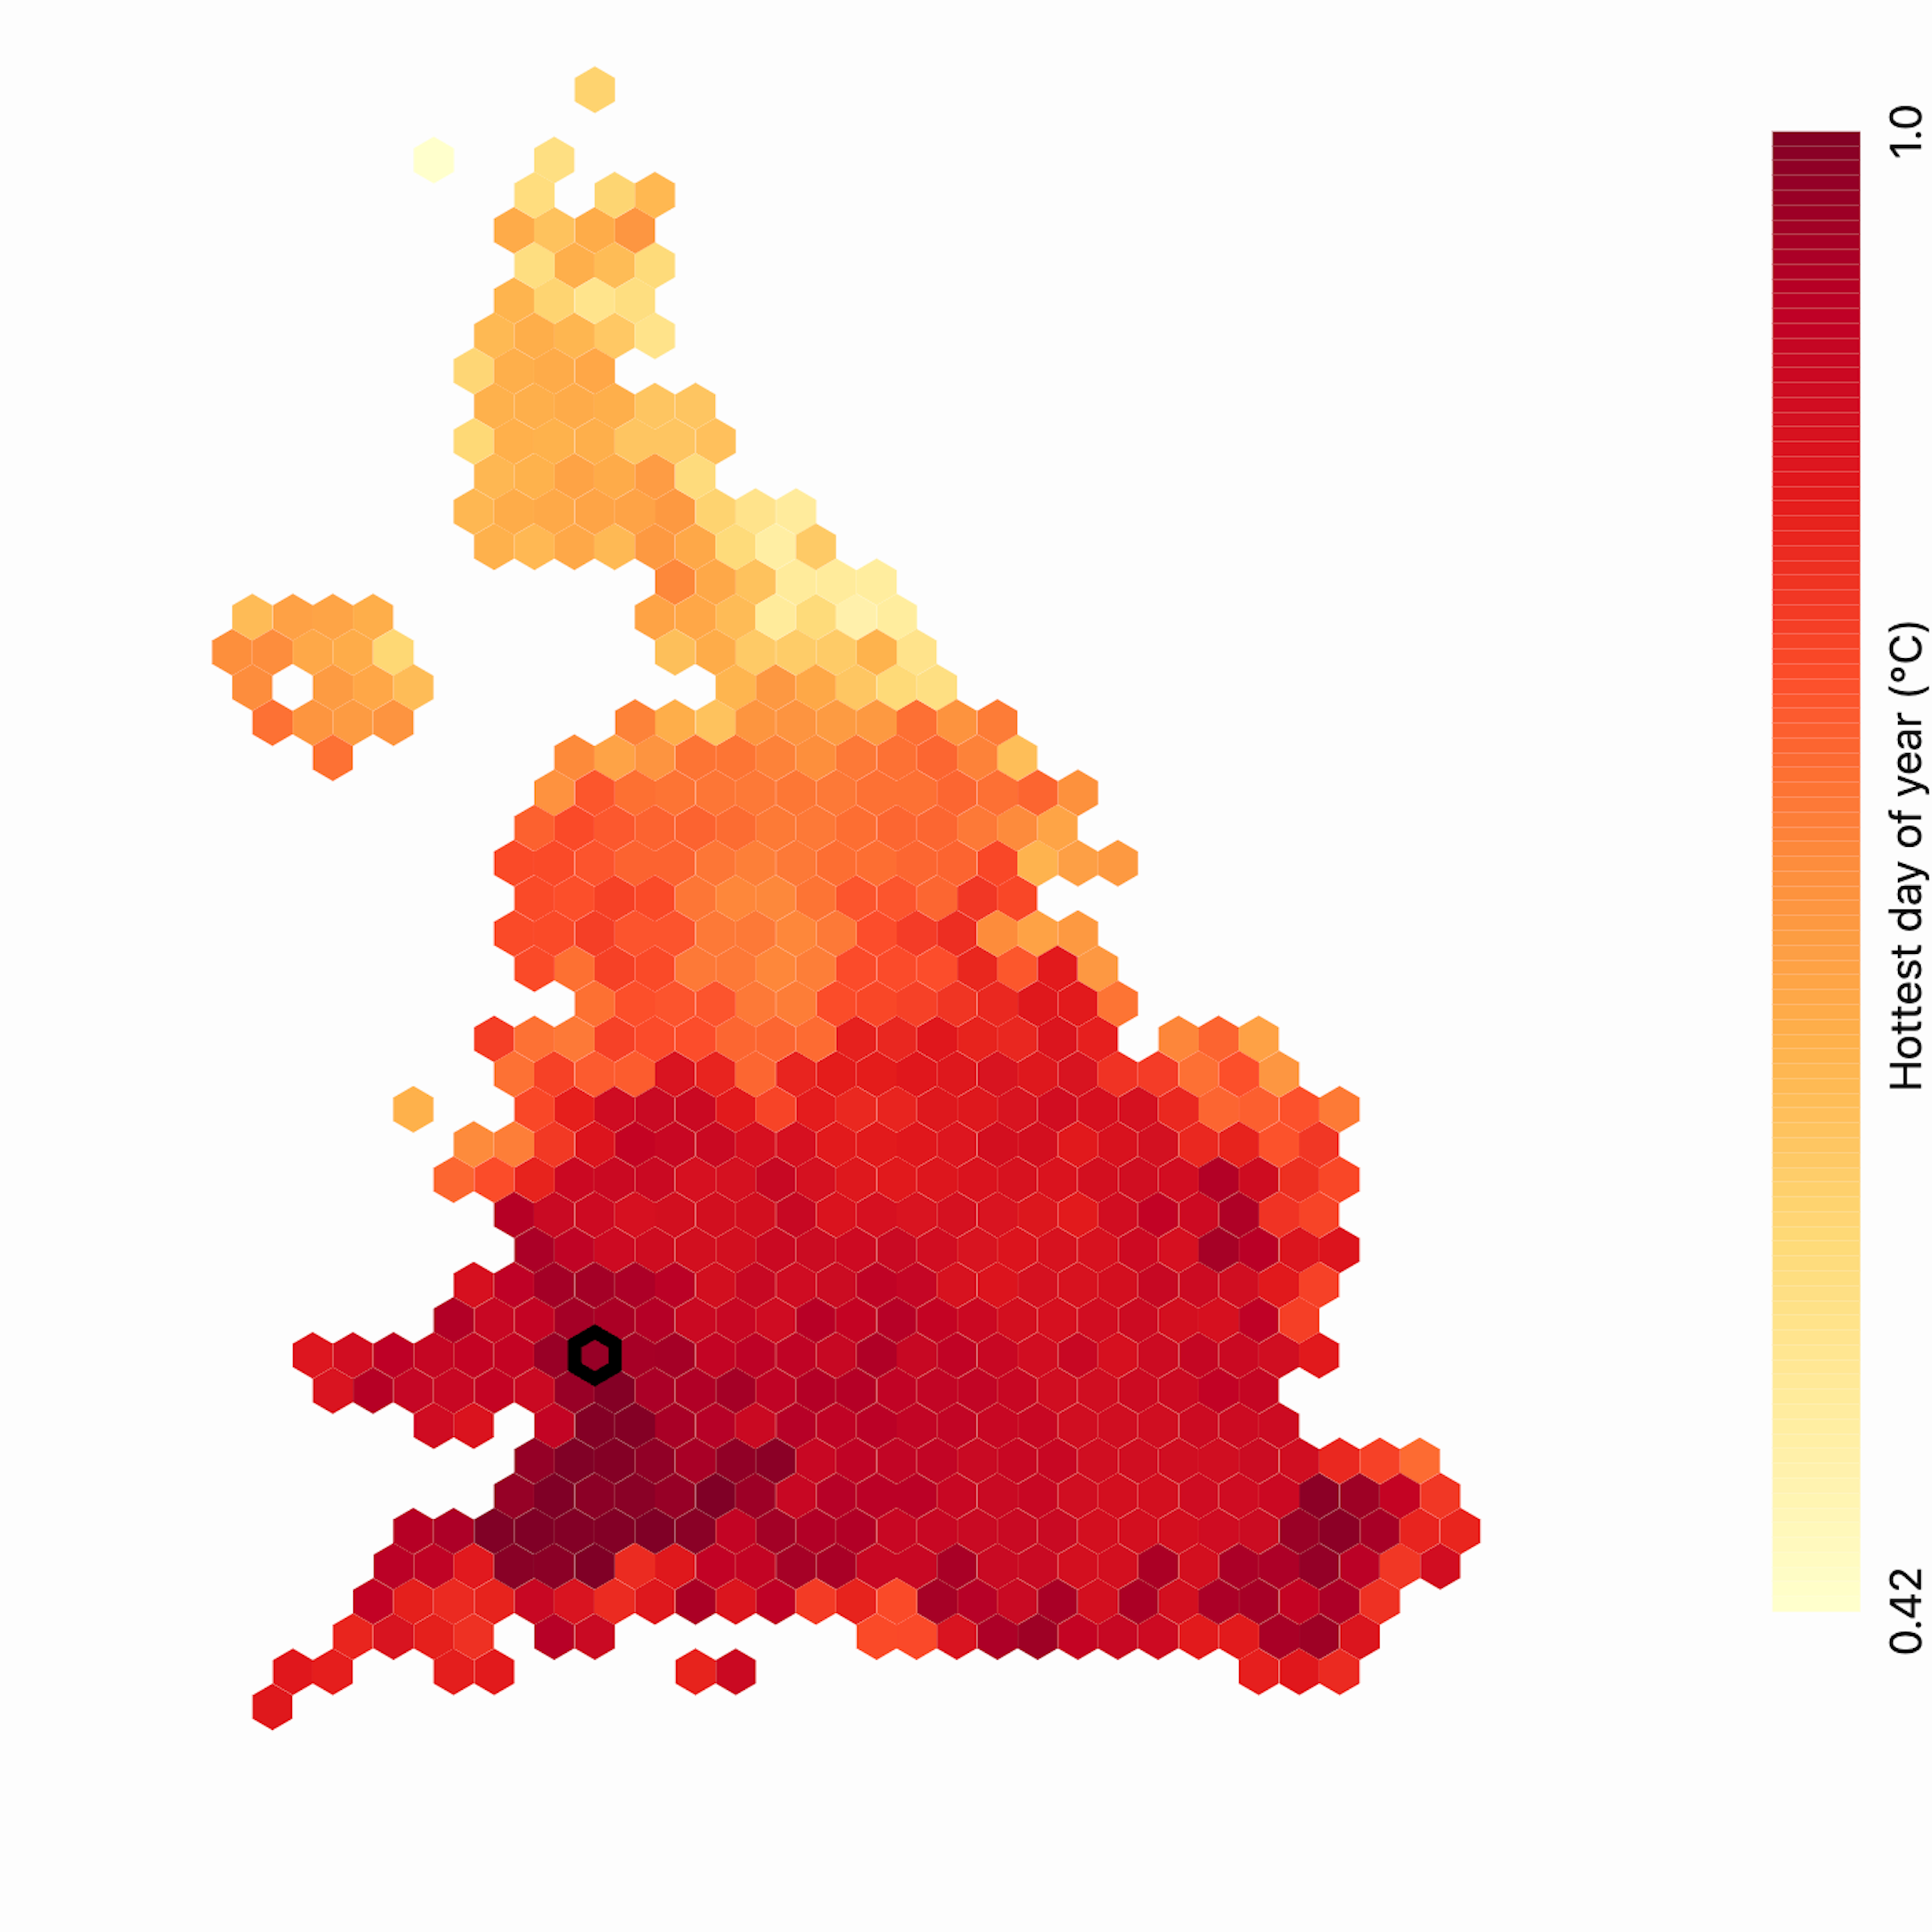 Hexmap of UK constituencies